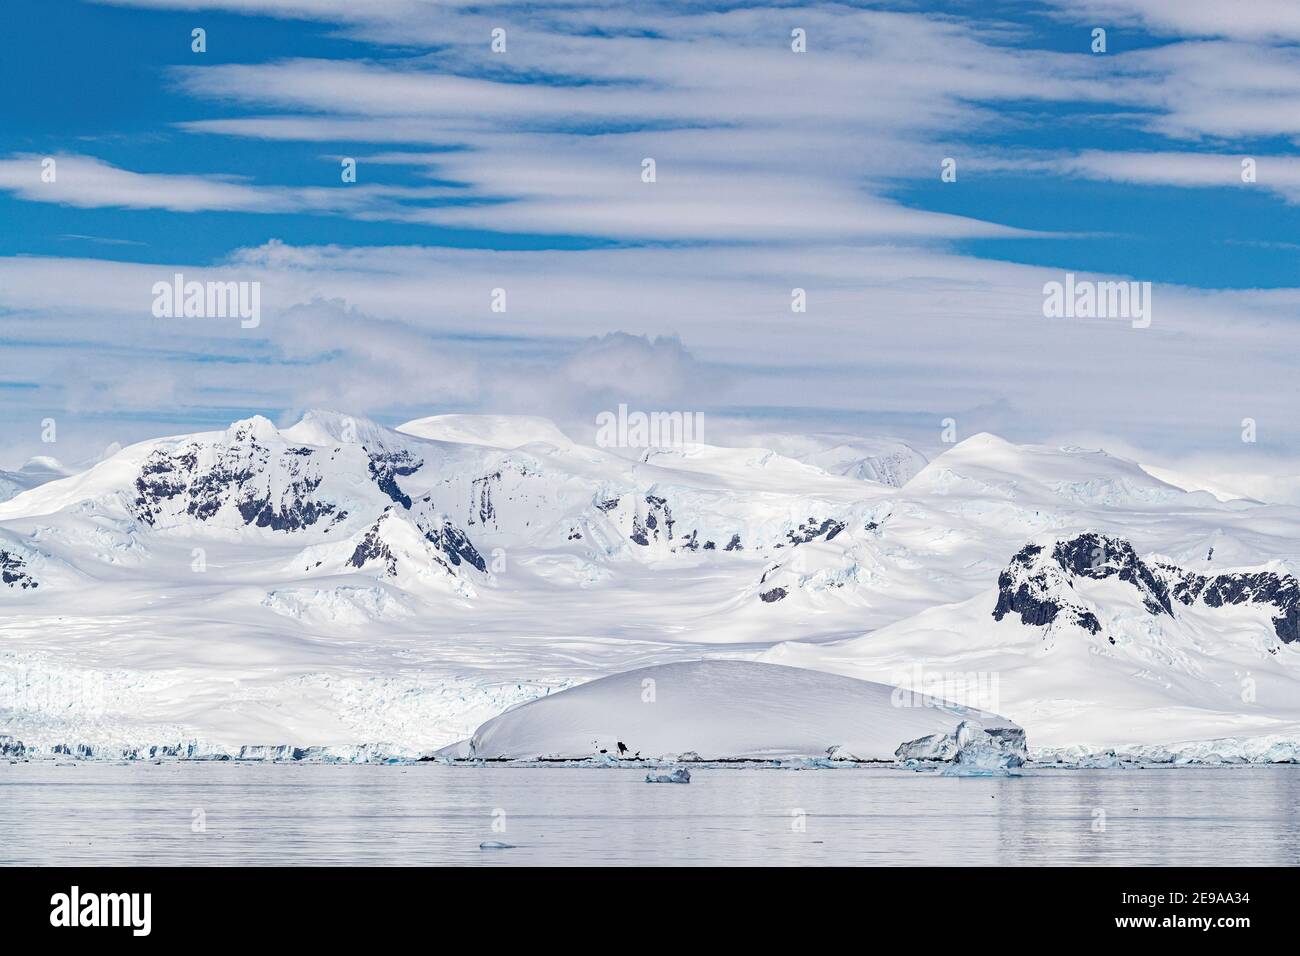 Montagnes enneigées et glaciers en eau tidwater dans le port de Mikkelsen, île Trinity, Antarctique. Banque D'Images